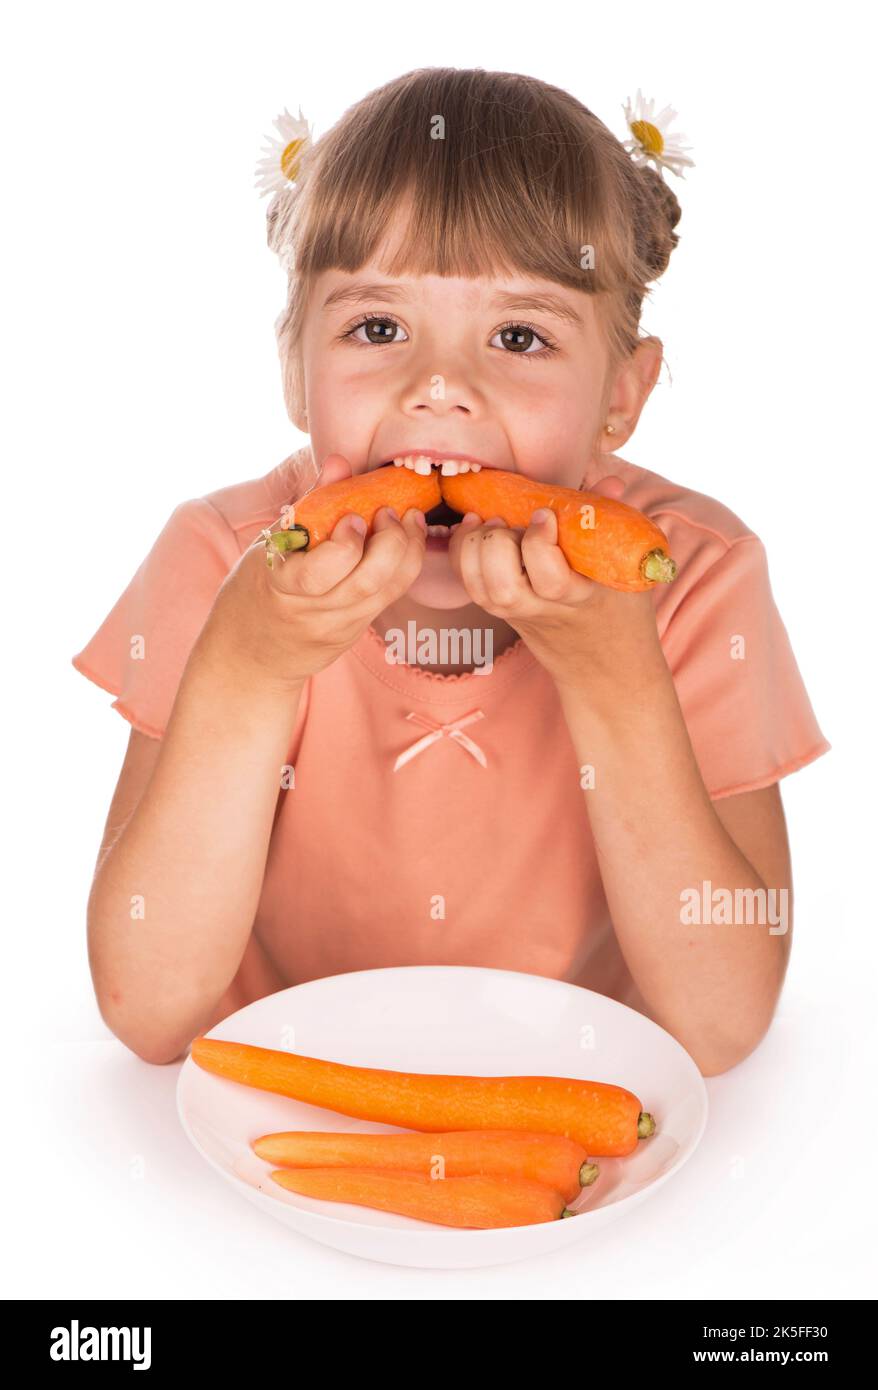 Une alimentation saine. Une petite fille dans un t-shirt orange et des fleurs dans ses cheveux mange une carotte sur un fond blanc Banque D'Images